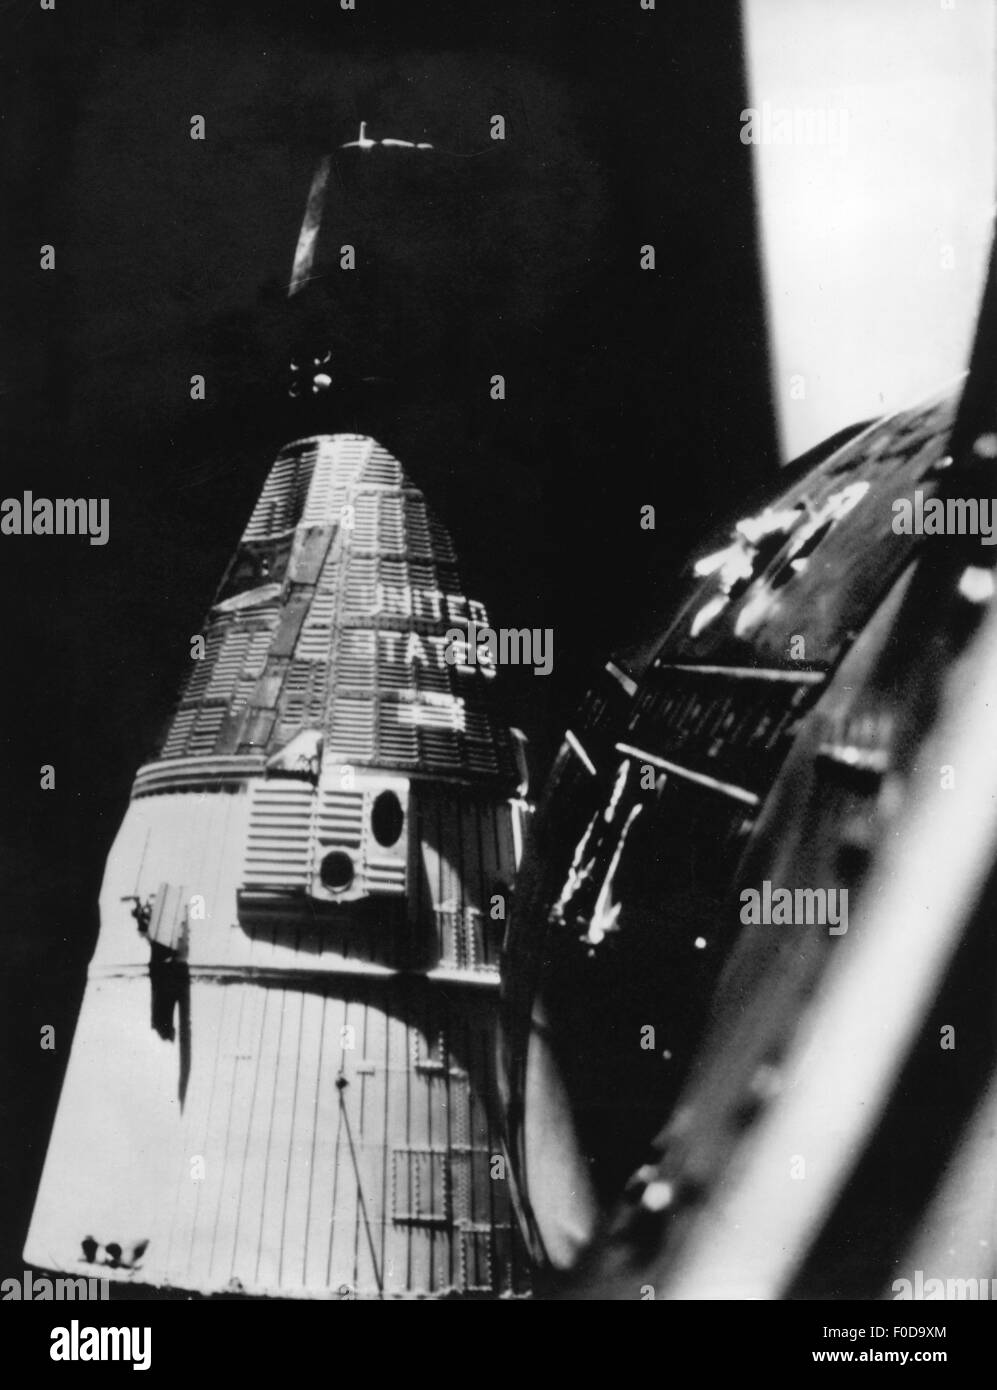 Aeroespacial / viaje espacial, proyecto Gemini, 1963-1966, encuentro de naves espaciales Gemini 6 (Walter M. Schirra y Thomas P. Stafford) y Gemini 7 (Frank Bormann y James A. Lovell), fotografía tomada de Gemini 6, 15.12.1965, NASA, espacial, viajero espacial, cápsula espacial cosmonáutica, vuelo, 60s, 1960, nave espacial, nave espacial, nave, nave, vuelo, vuelo, universo histórico, Histórico, GT-6, 6A, GT-7, siglo XX, Derechos adicionales-Clearencias-no disponible Foto de stock